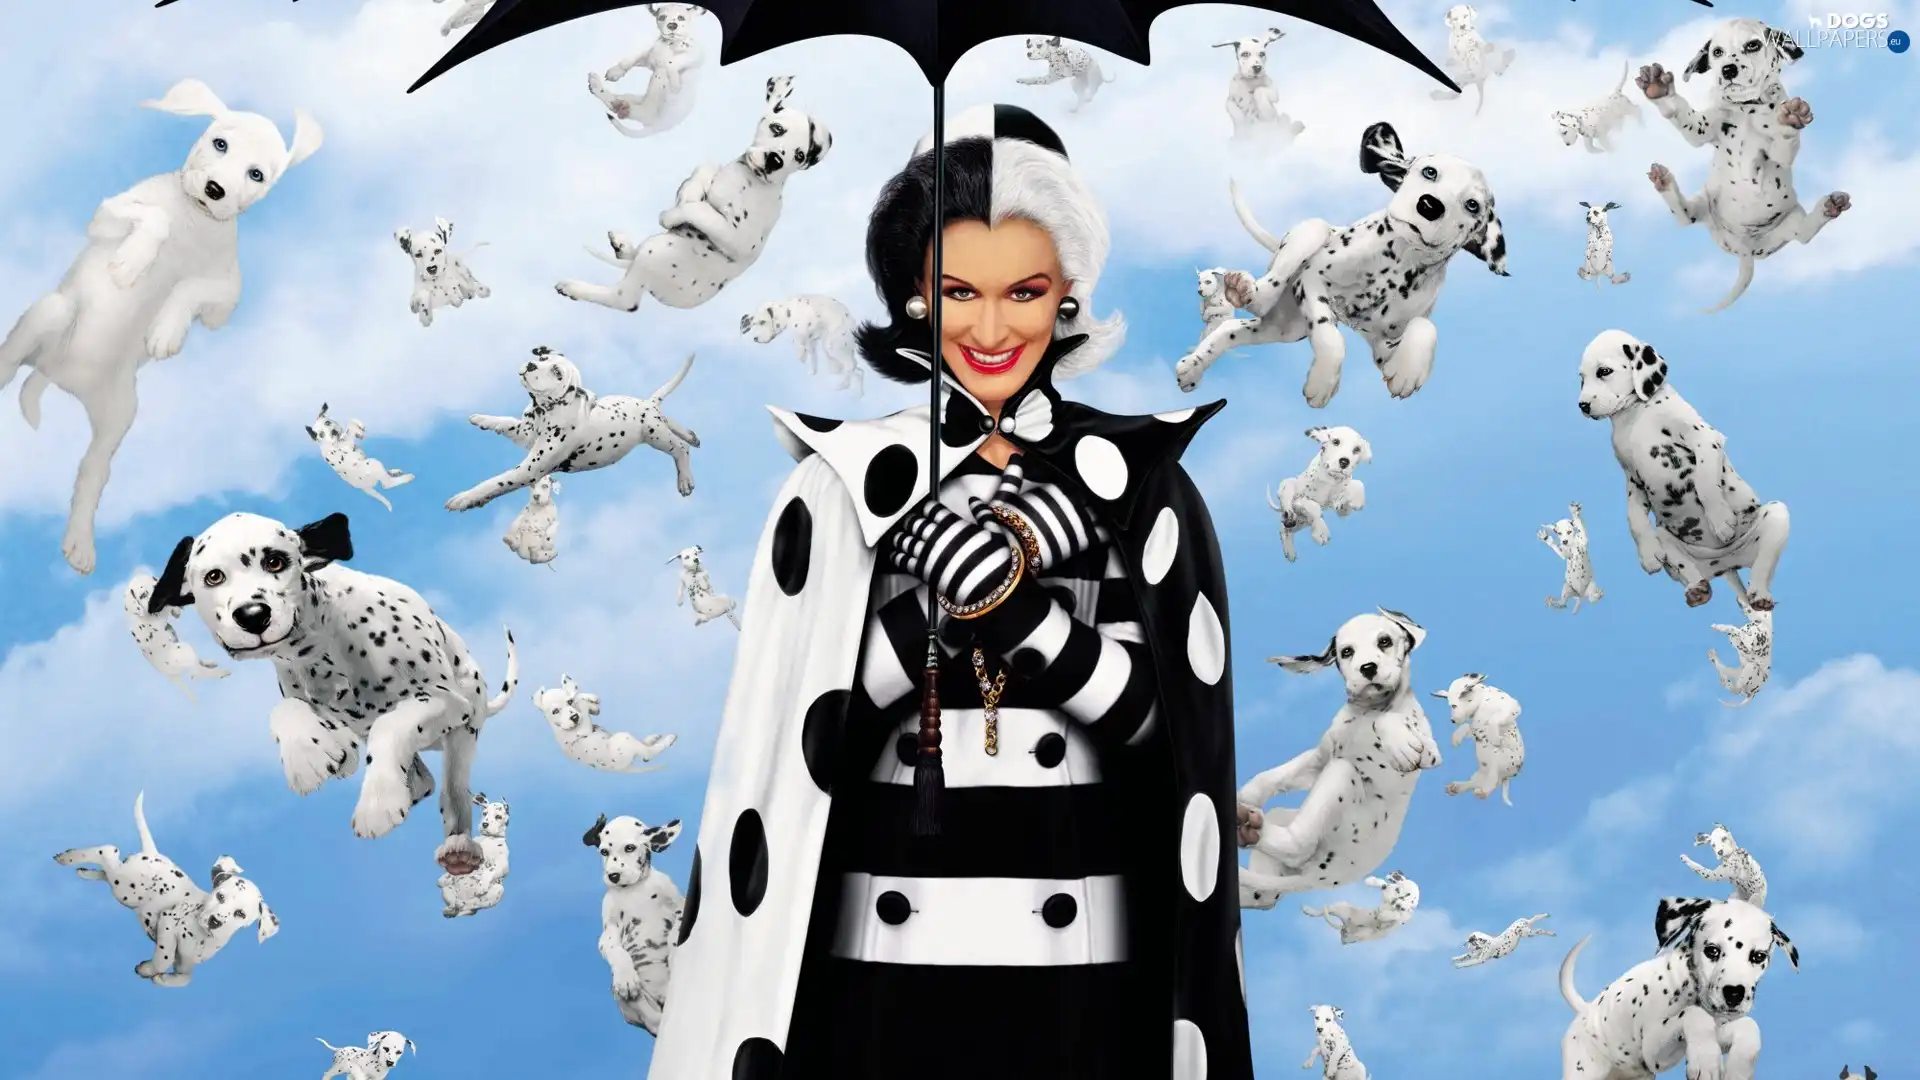 Dalmatians, puppies, Women, Umbrella